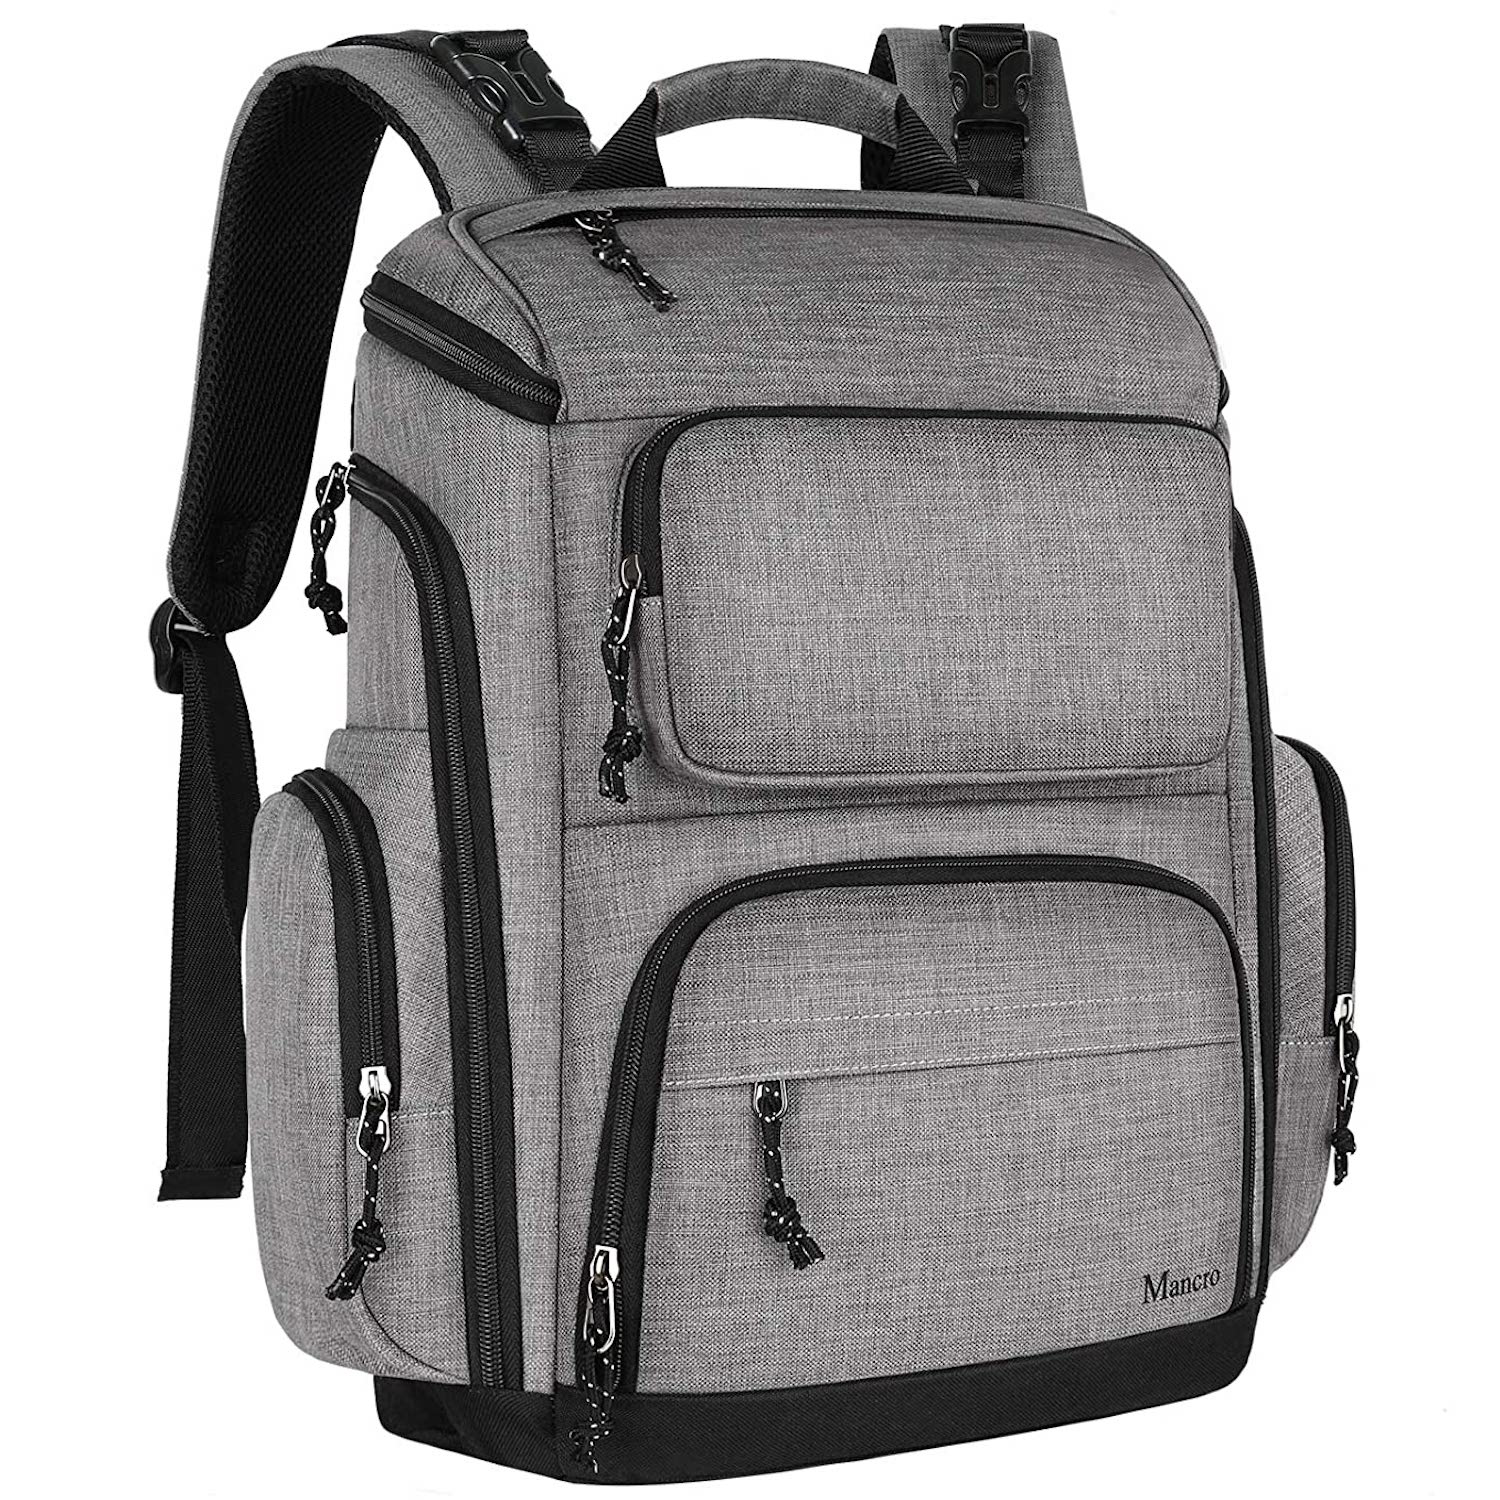 Mancro Large Capacity Waterproof Backpack Diaper Bag 